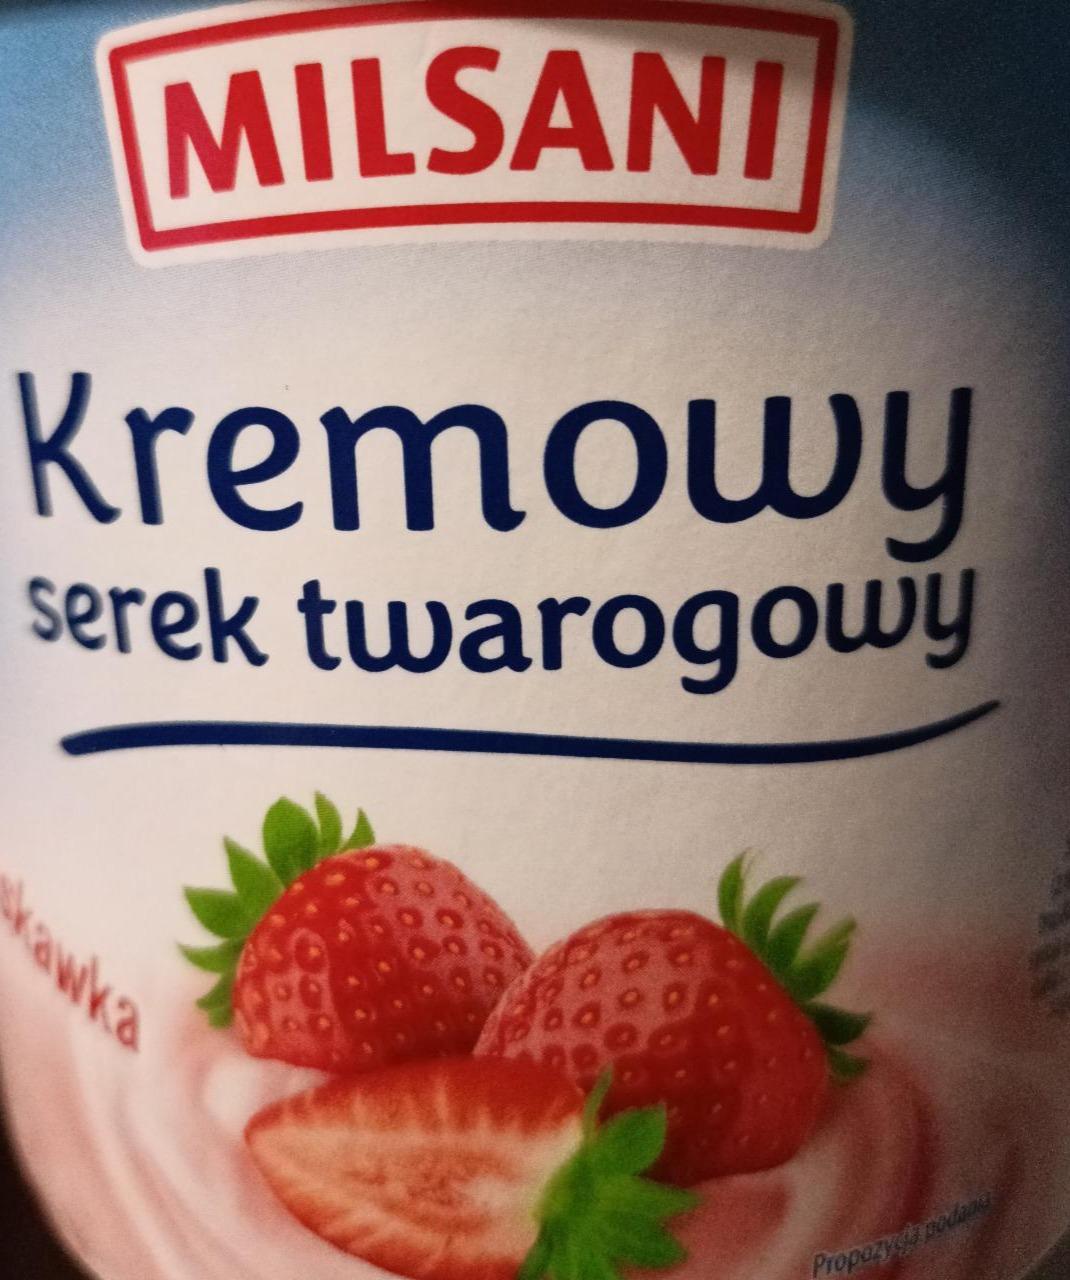 Zdjęcia - Kremowy serek twarogowy z 15% wsadem truskawkowym Milsani